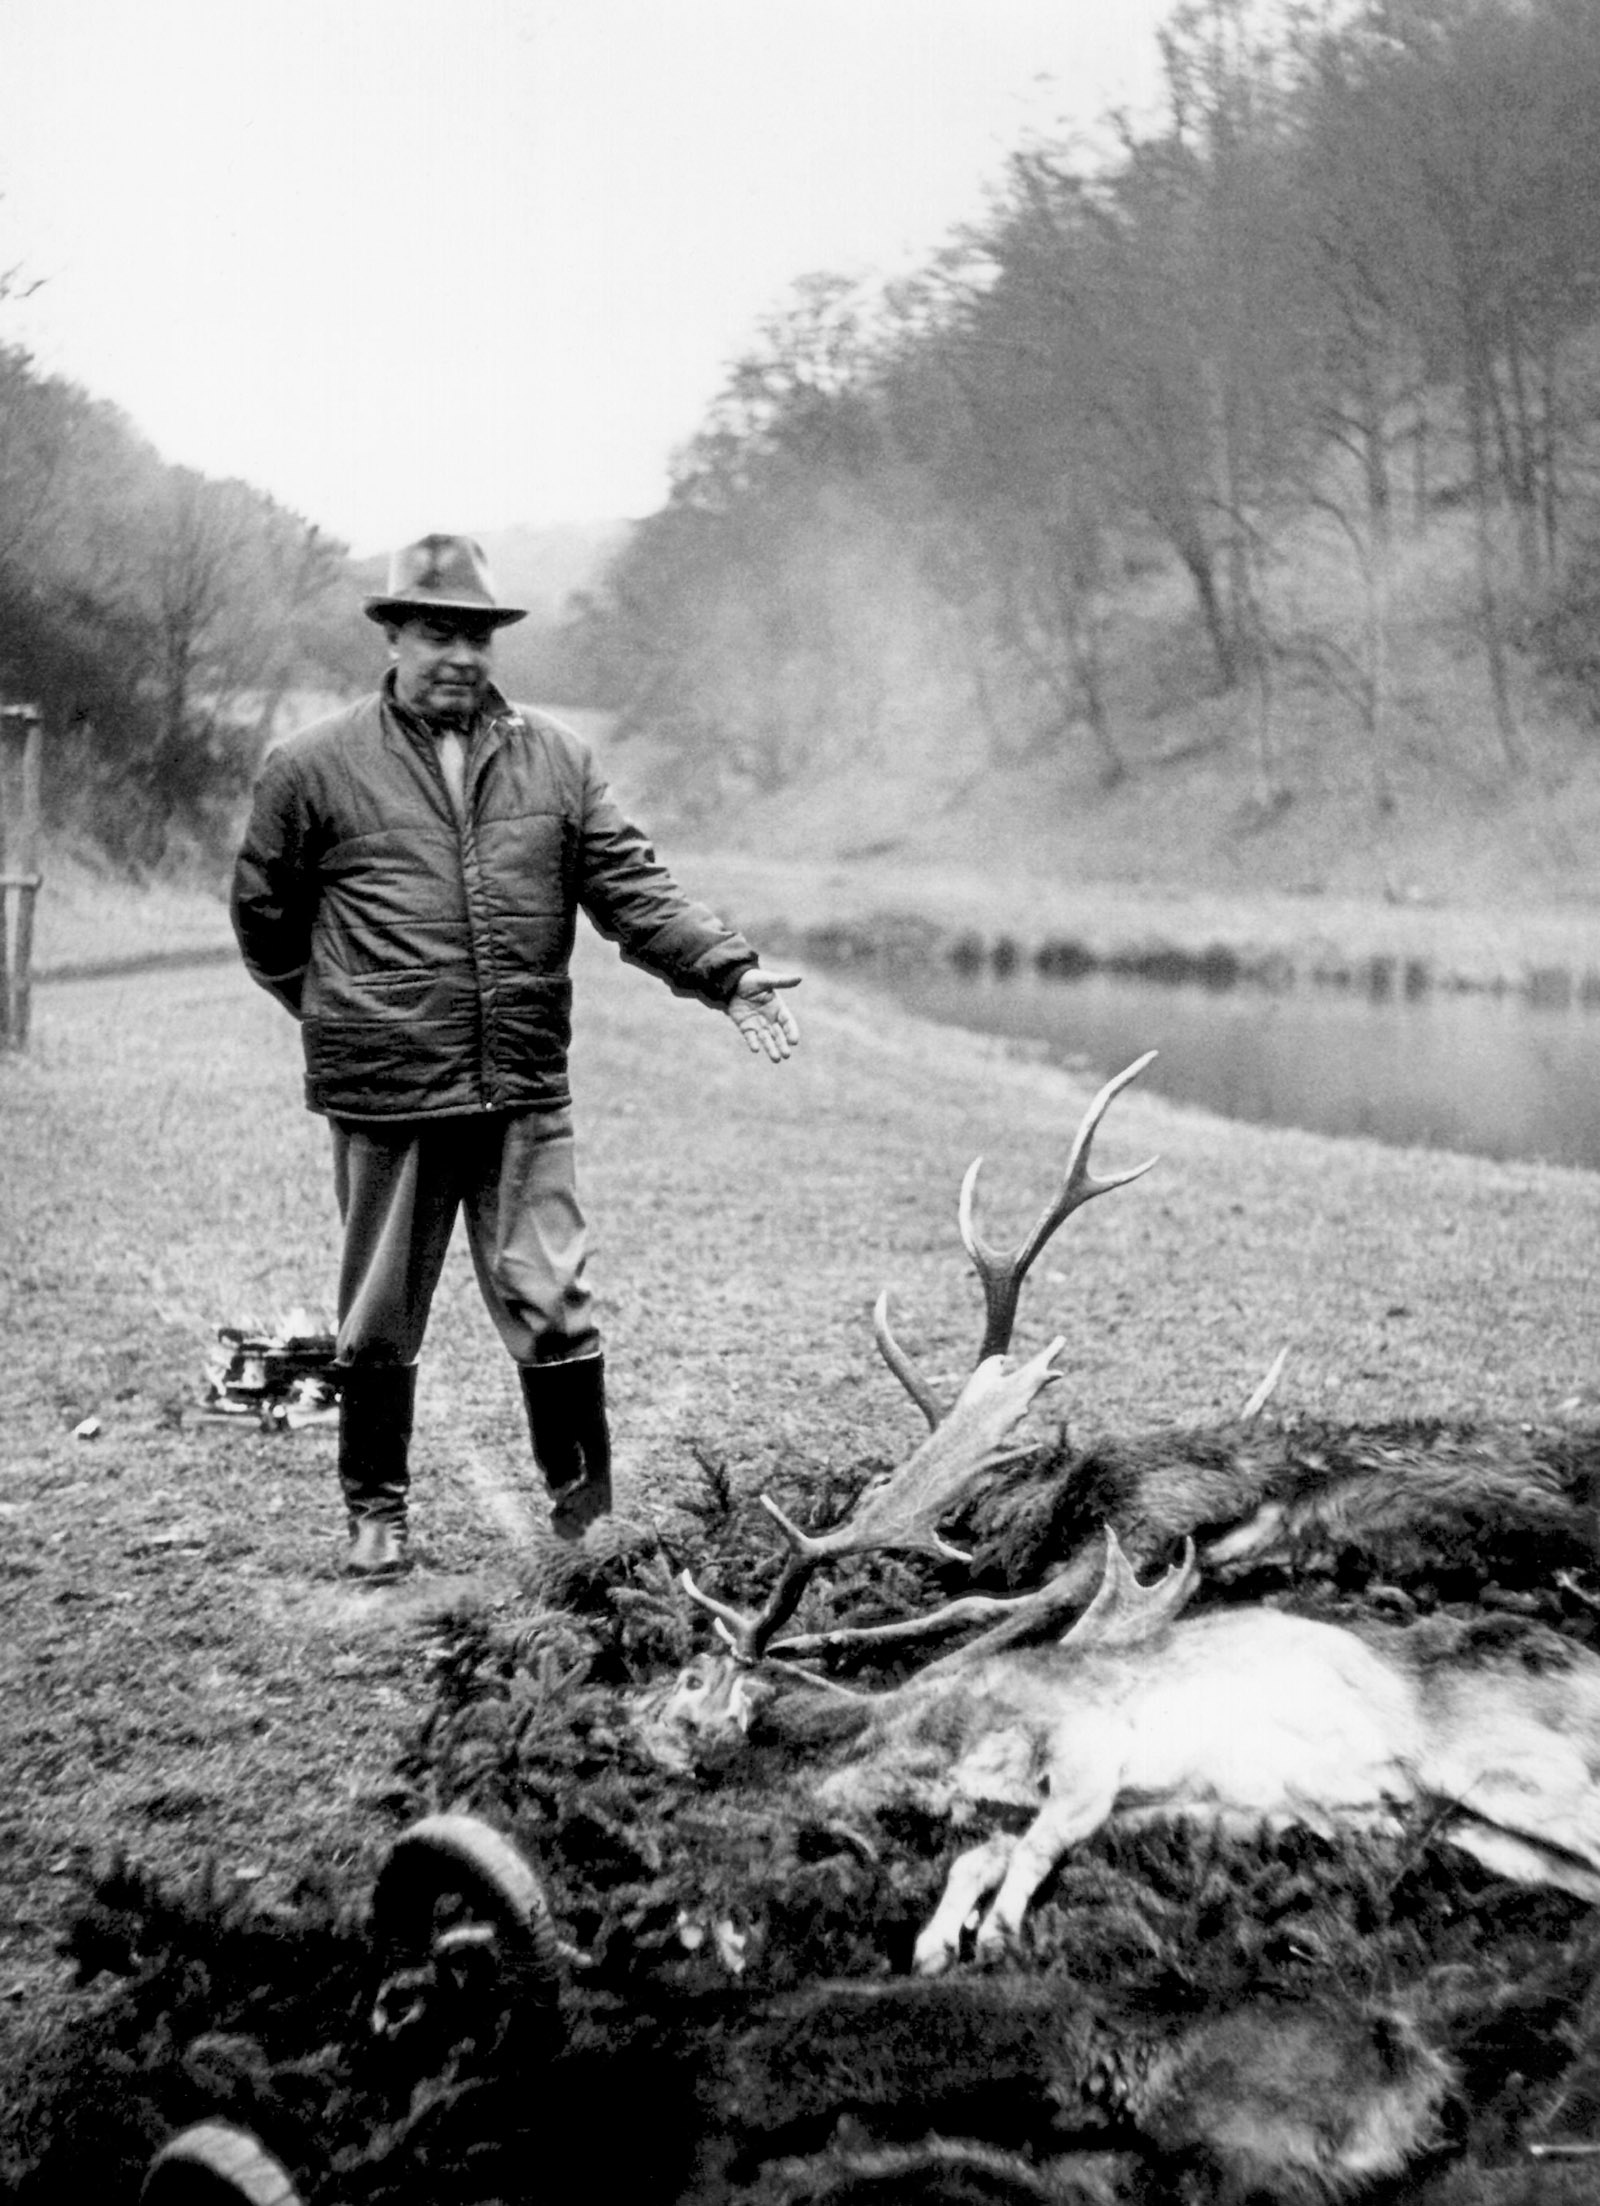 Leonid Brezhnev hunting stag in Czechoslovakia